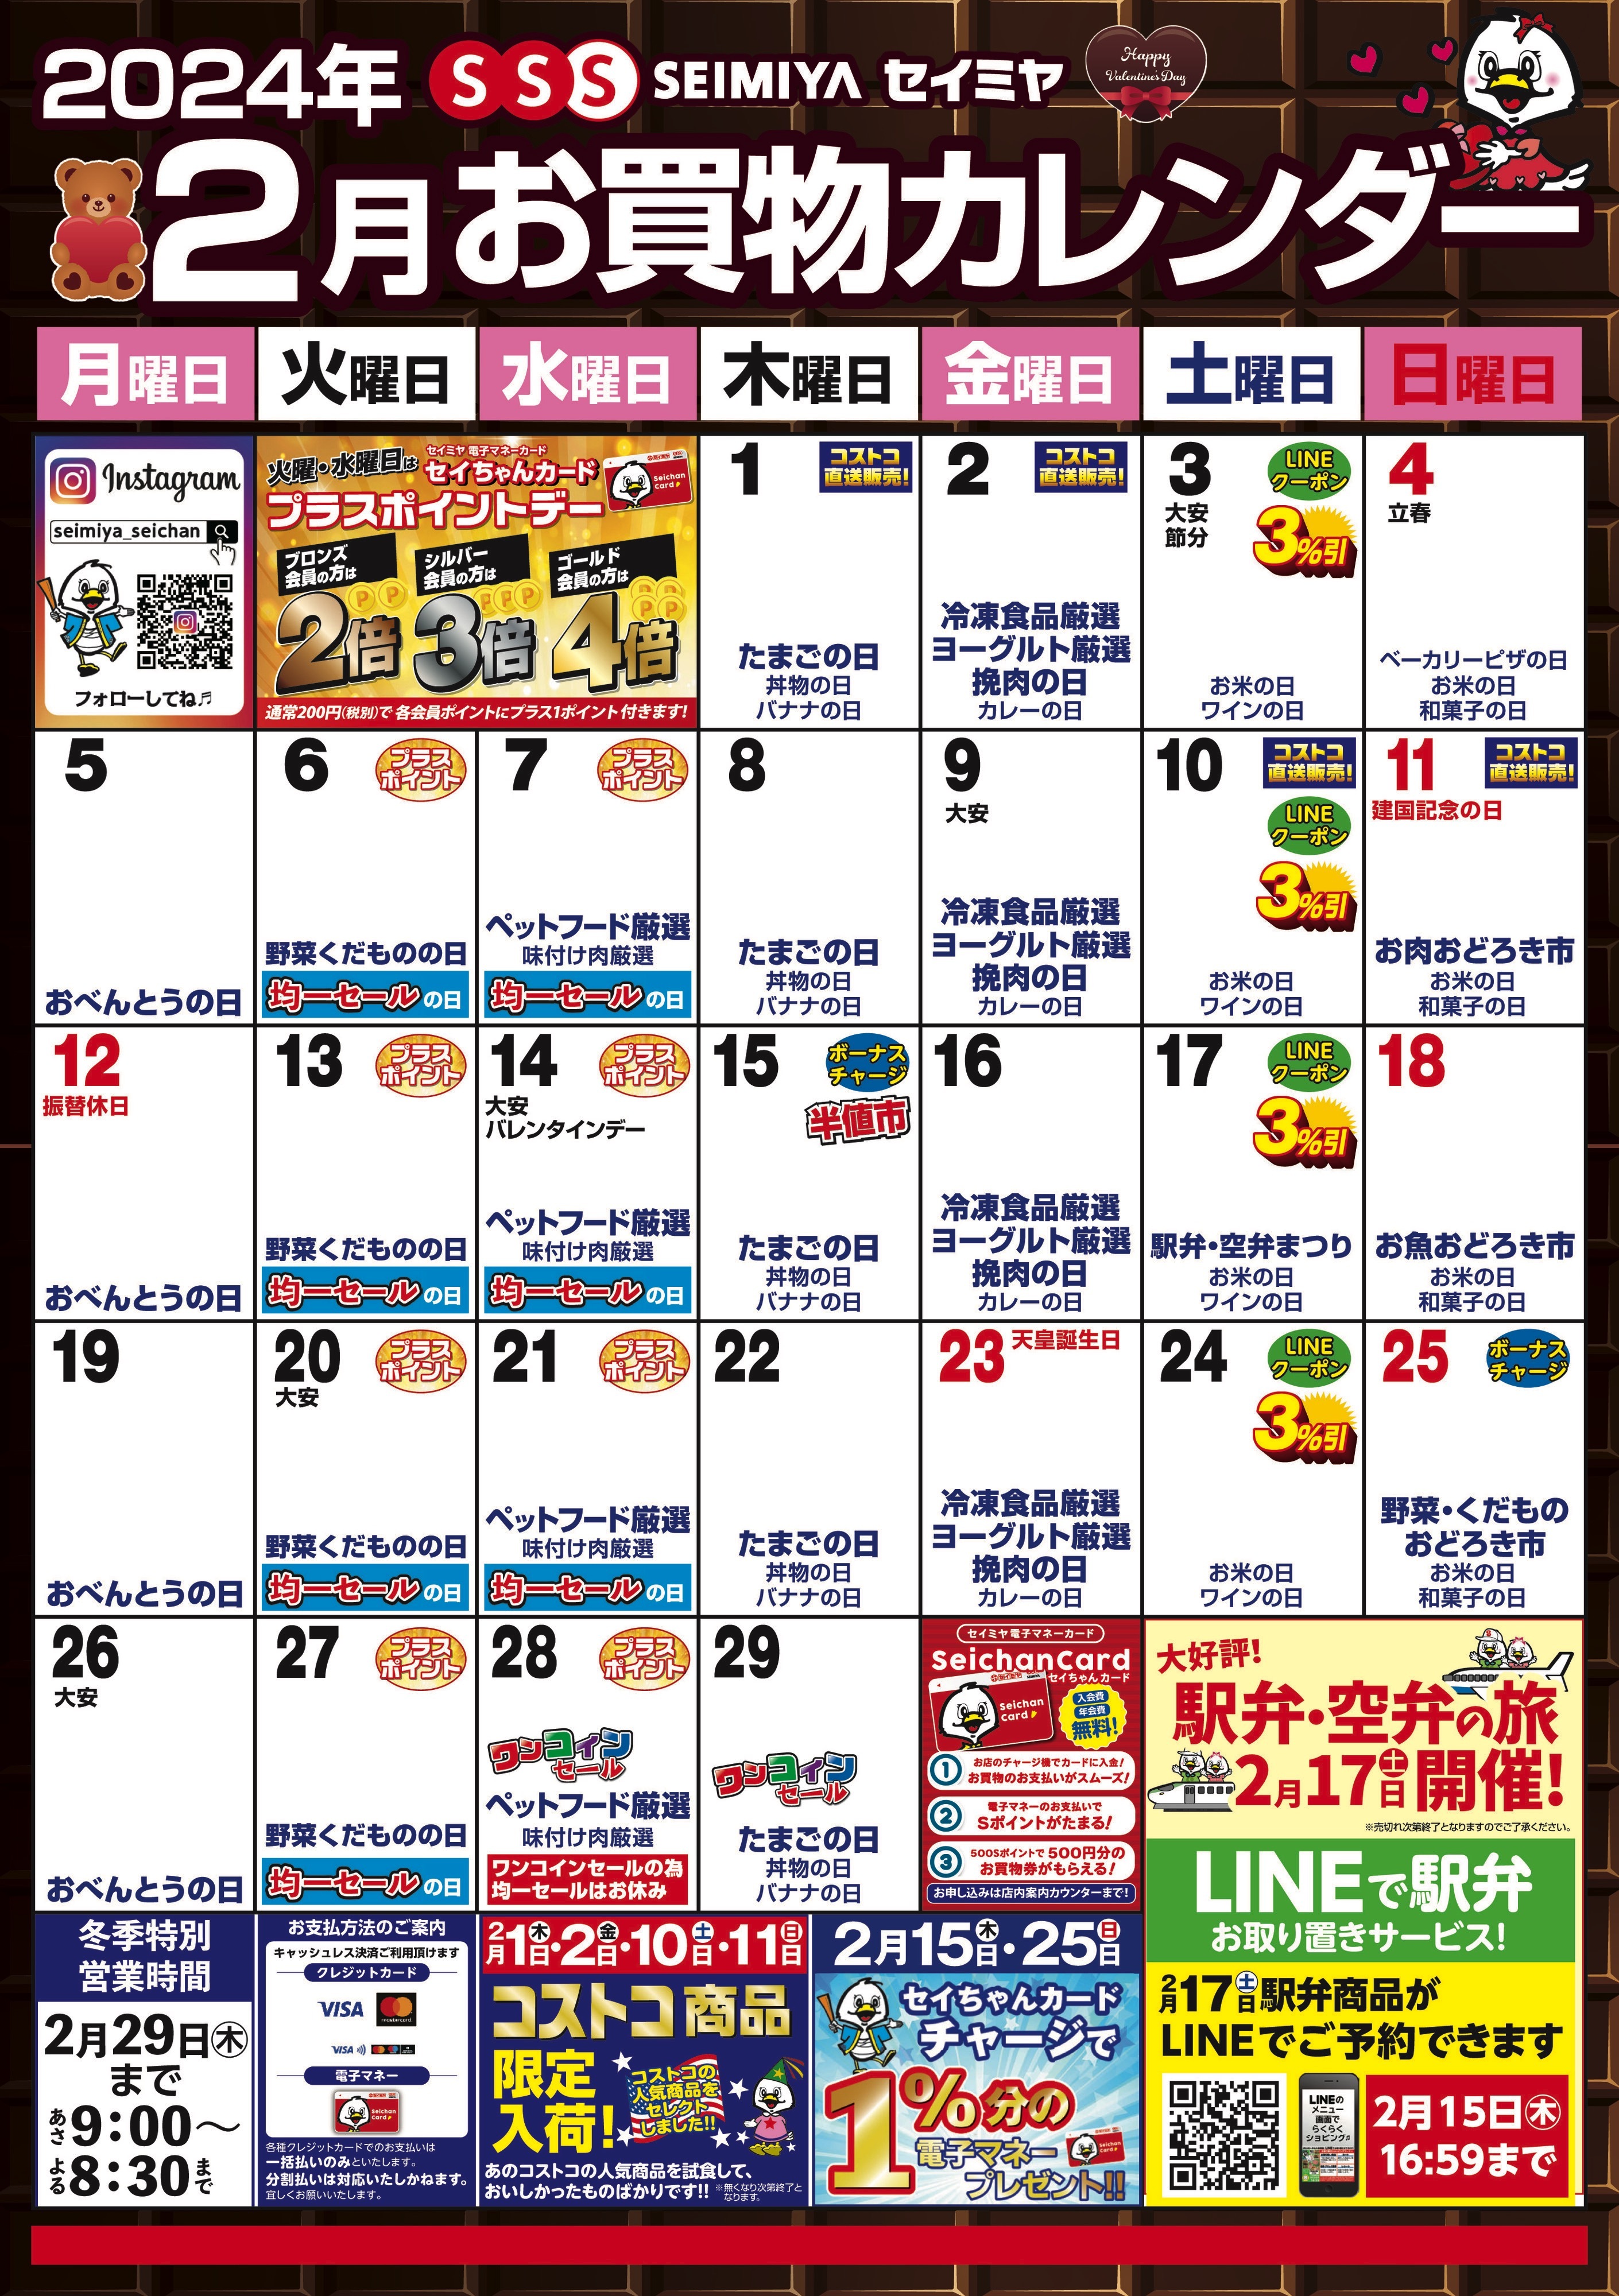 2月のお買物カレンダー